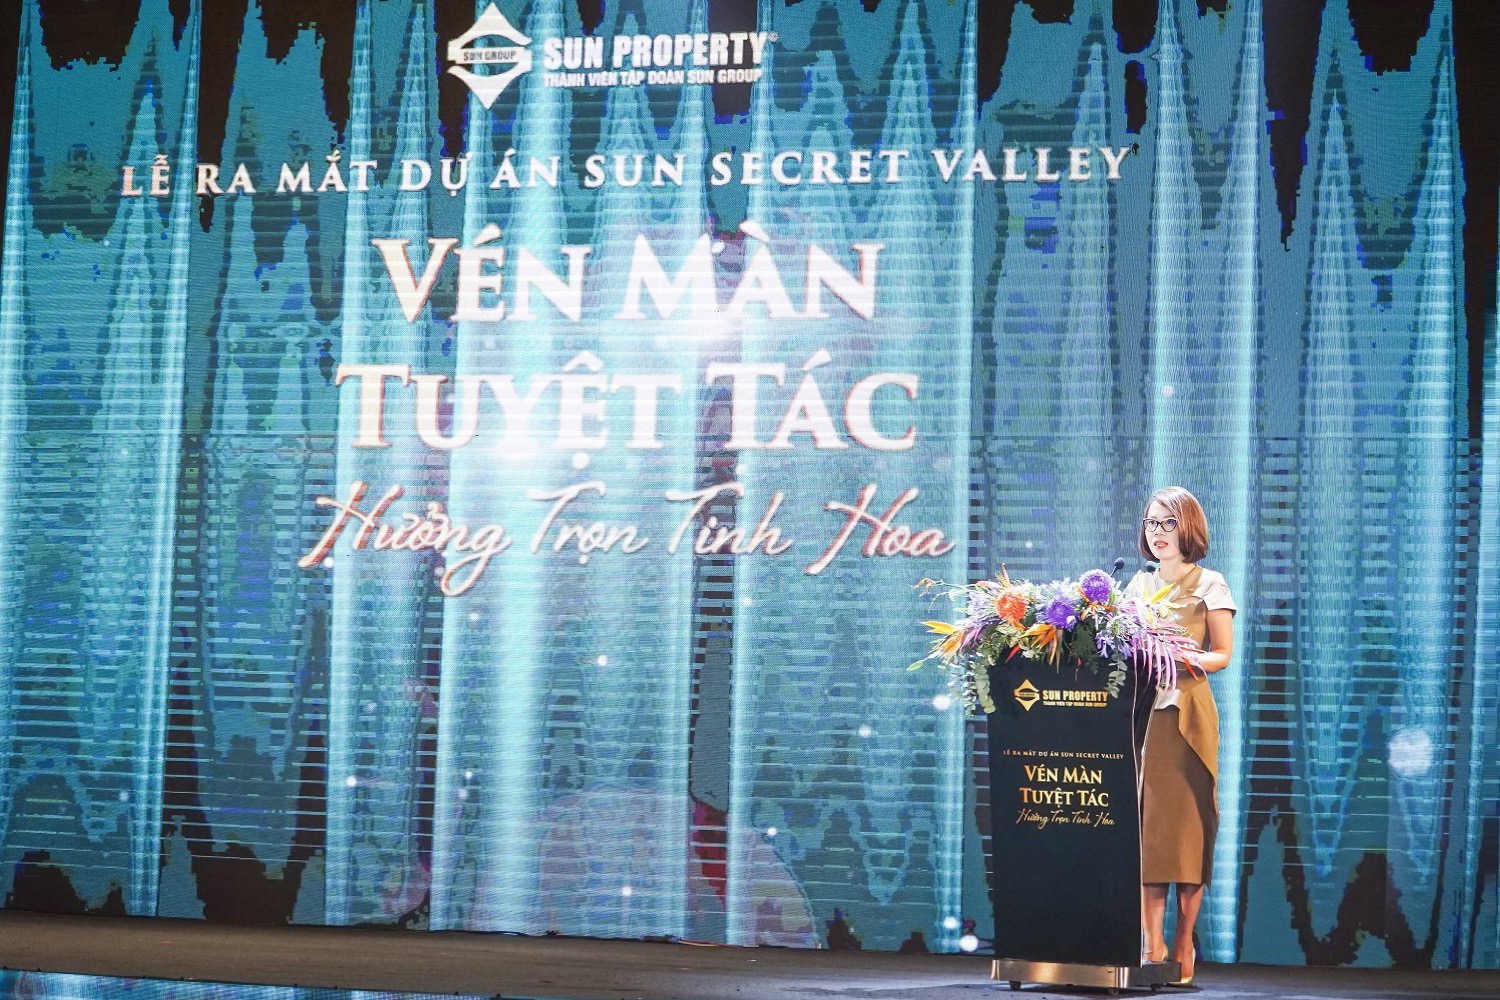 Bà Nguyễn Ngọc Thúy Linh - TGĐ Sun Property chia sẻ về Sun Secret Valley.